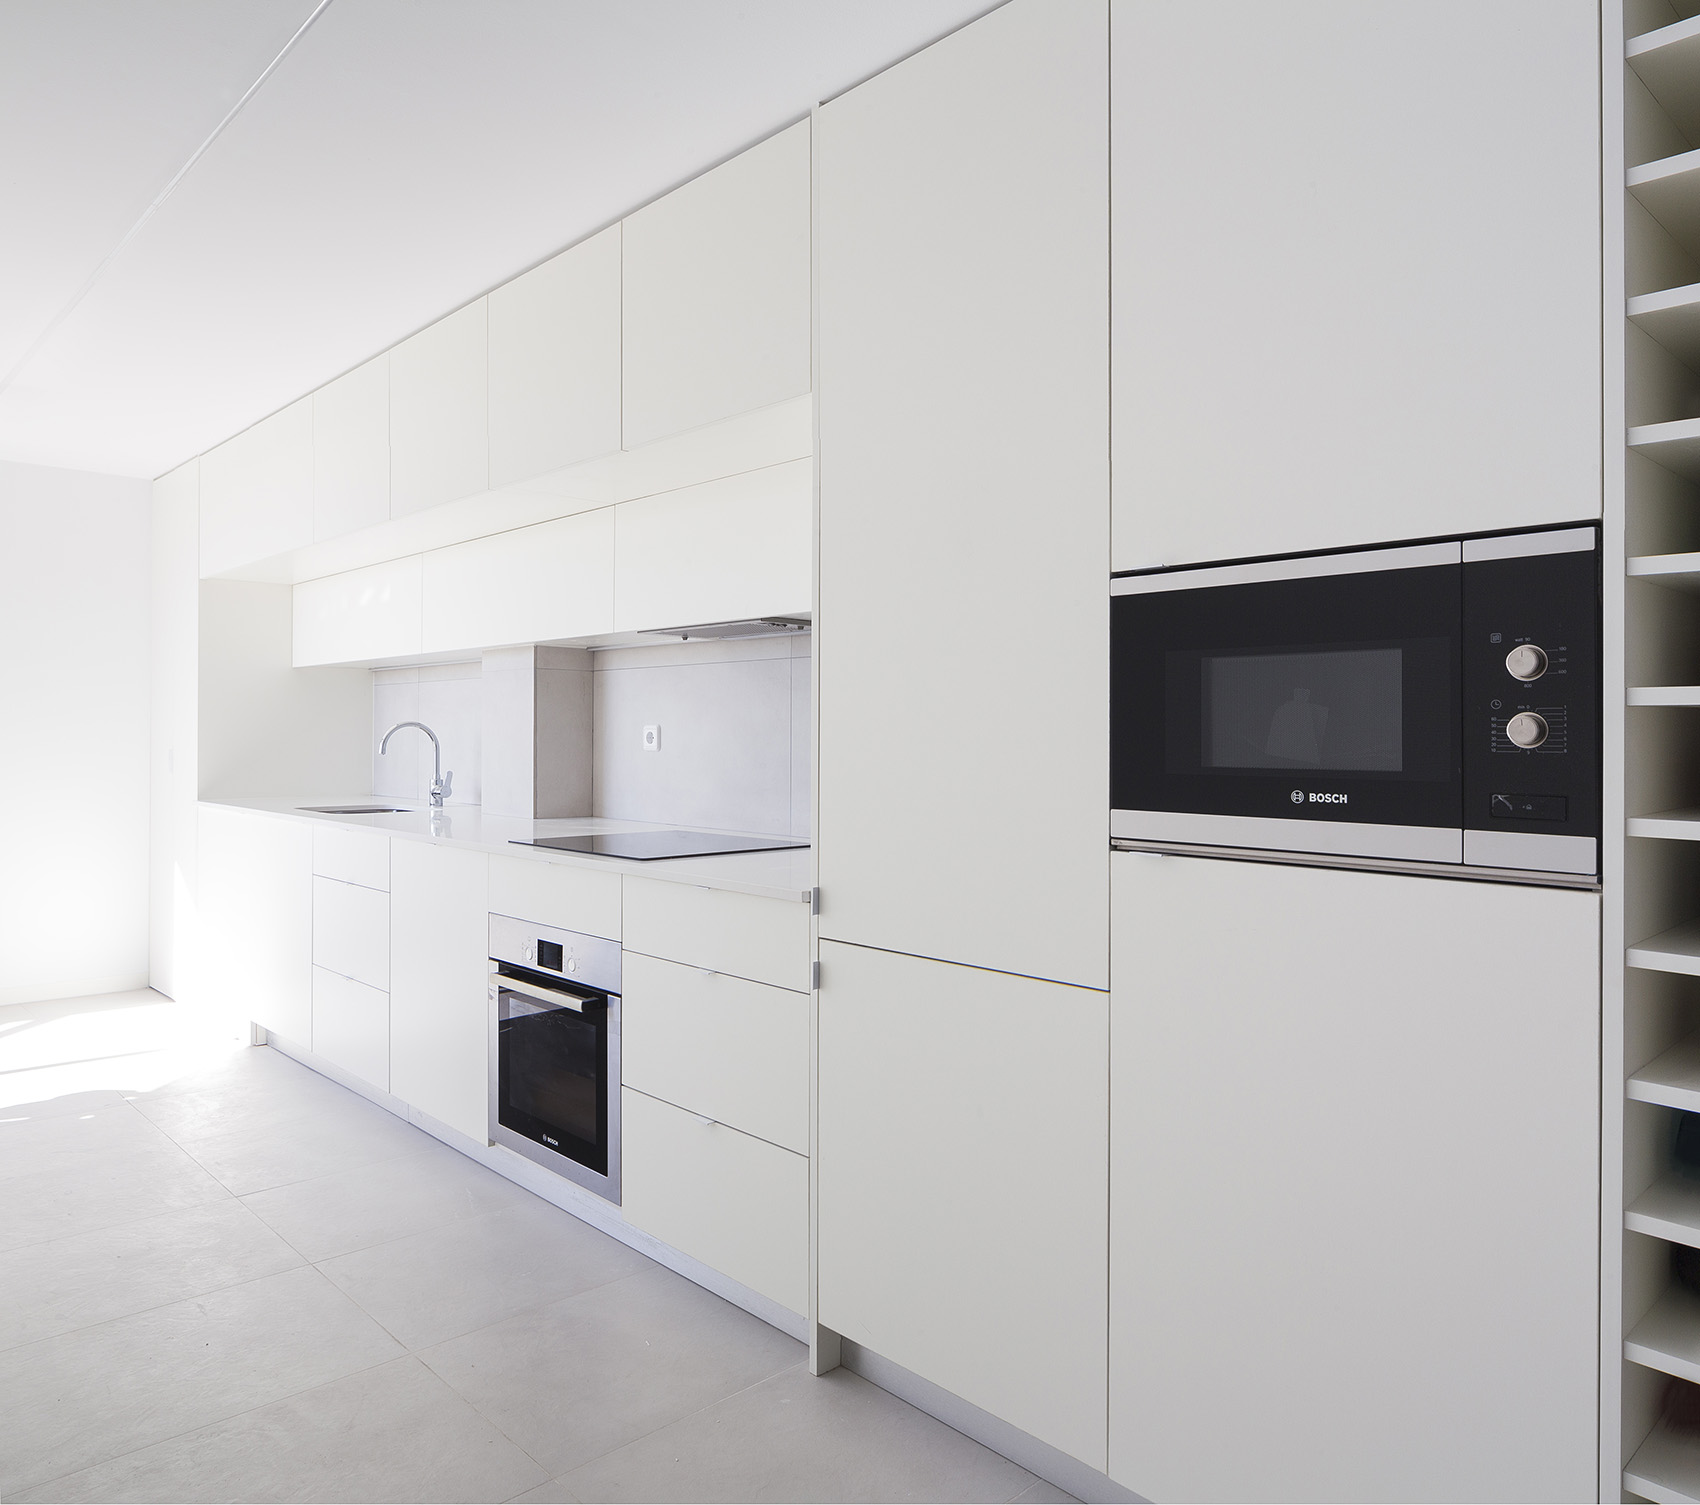 厨房以白色为主，兼具美观与视觉放大效果，让人觉得空间不那么狭窄。